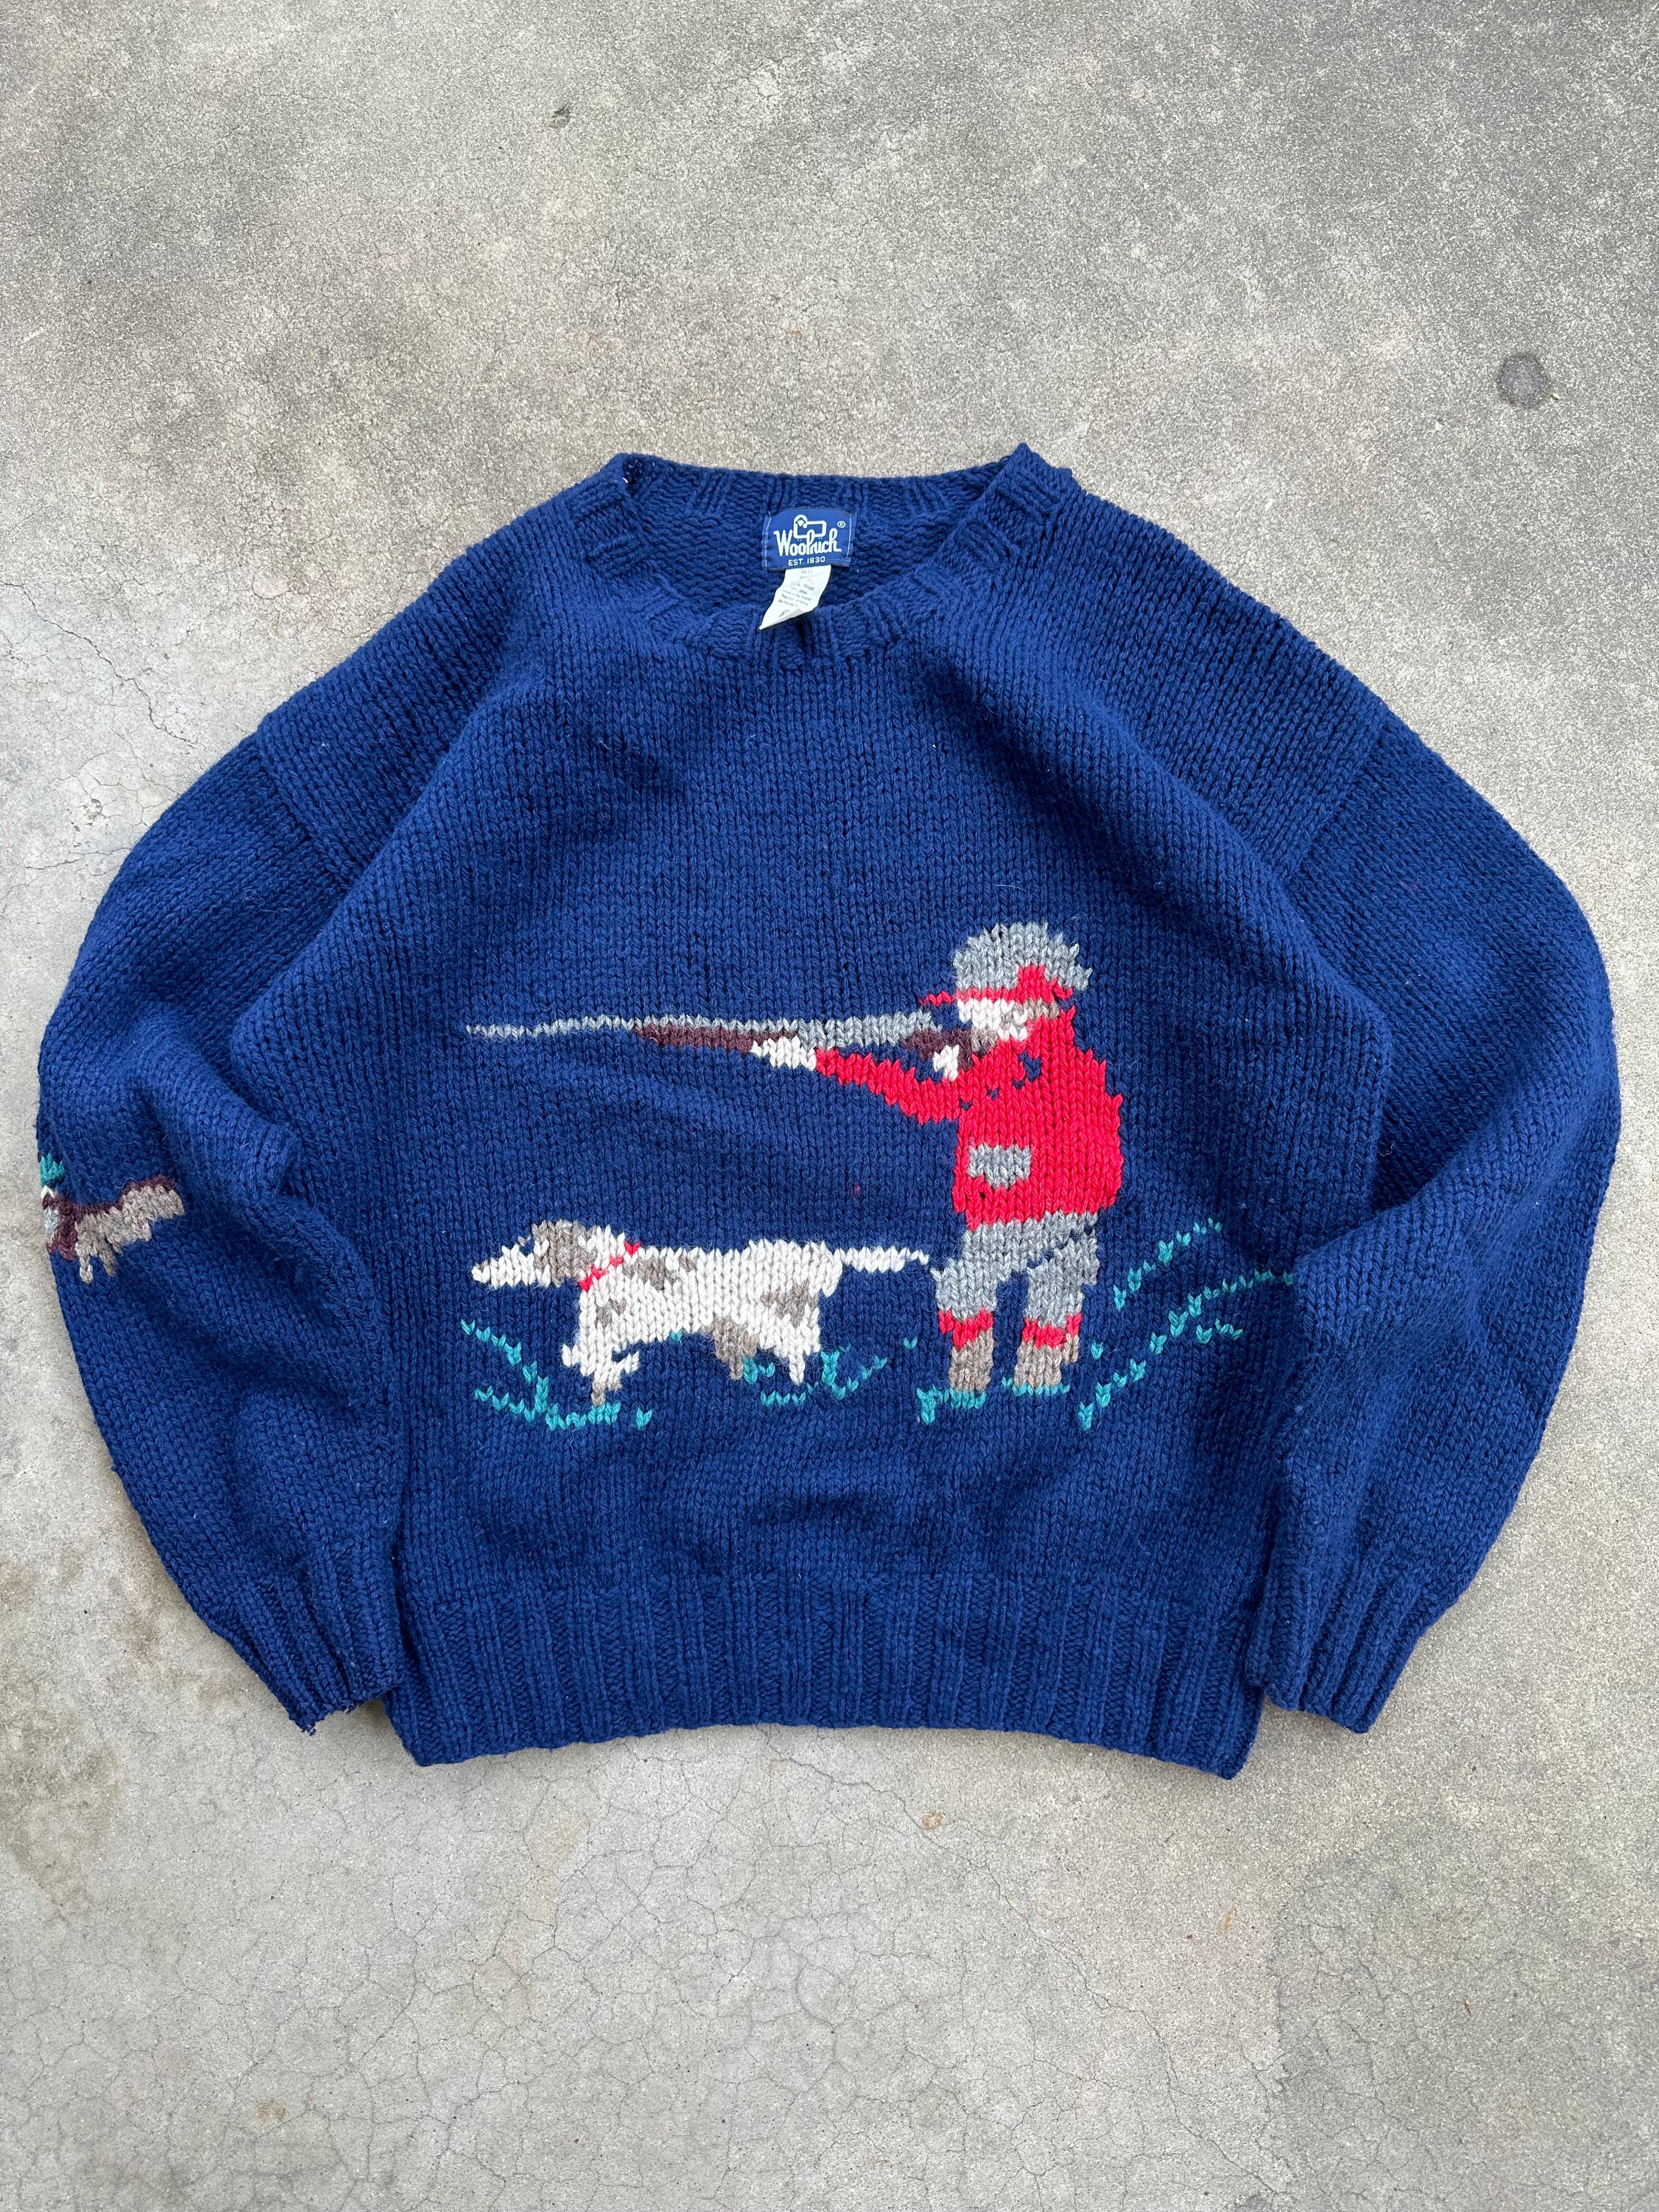 1990s Woolrich Bird Dog Knitted Sweater (XL)